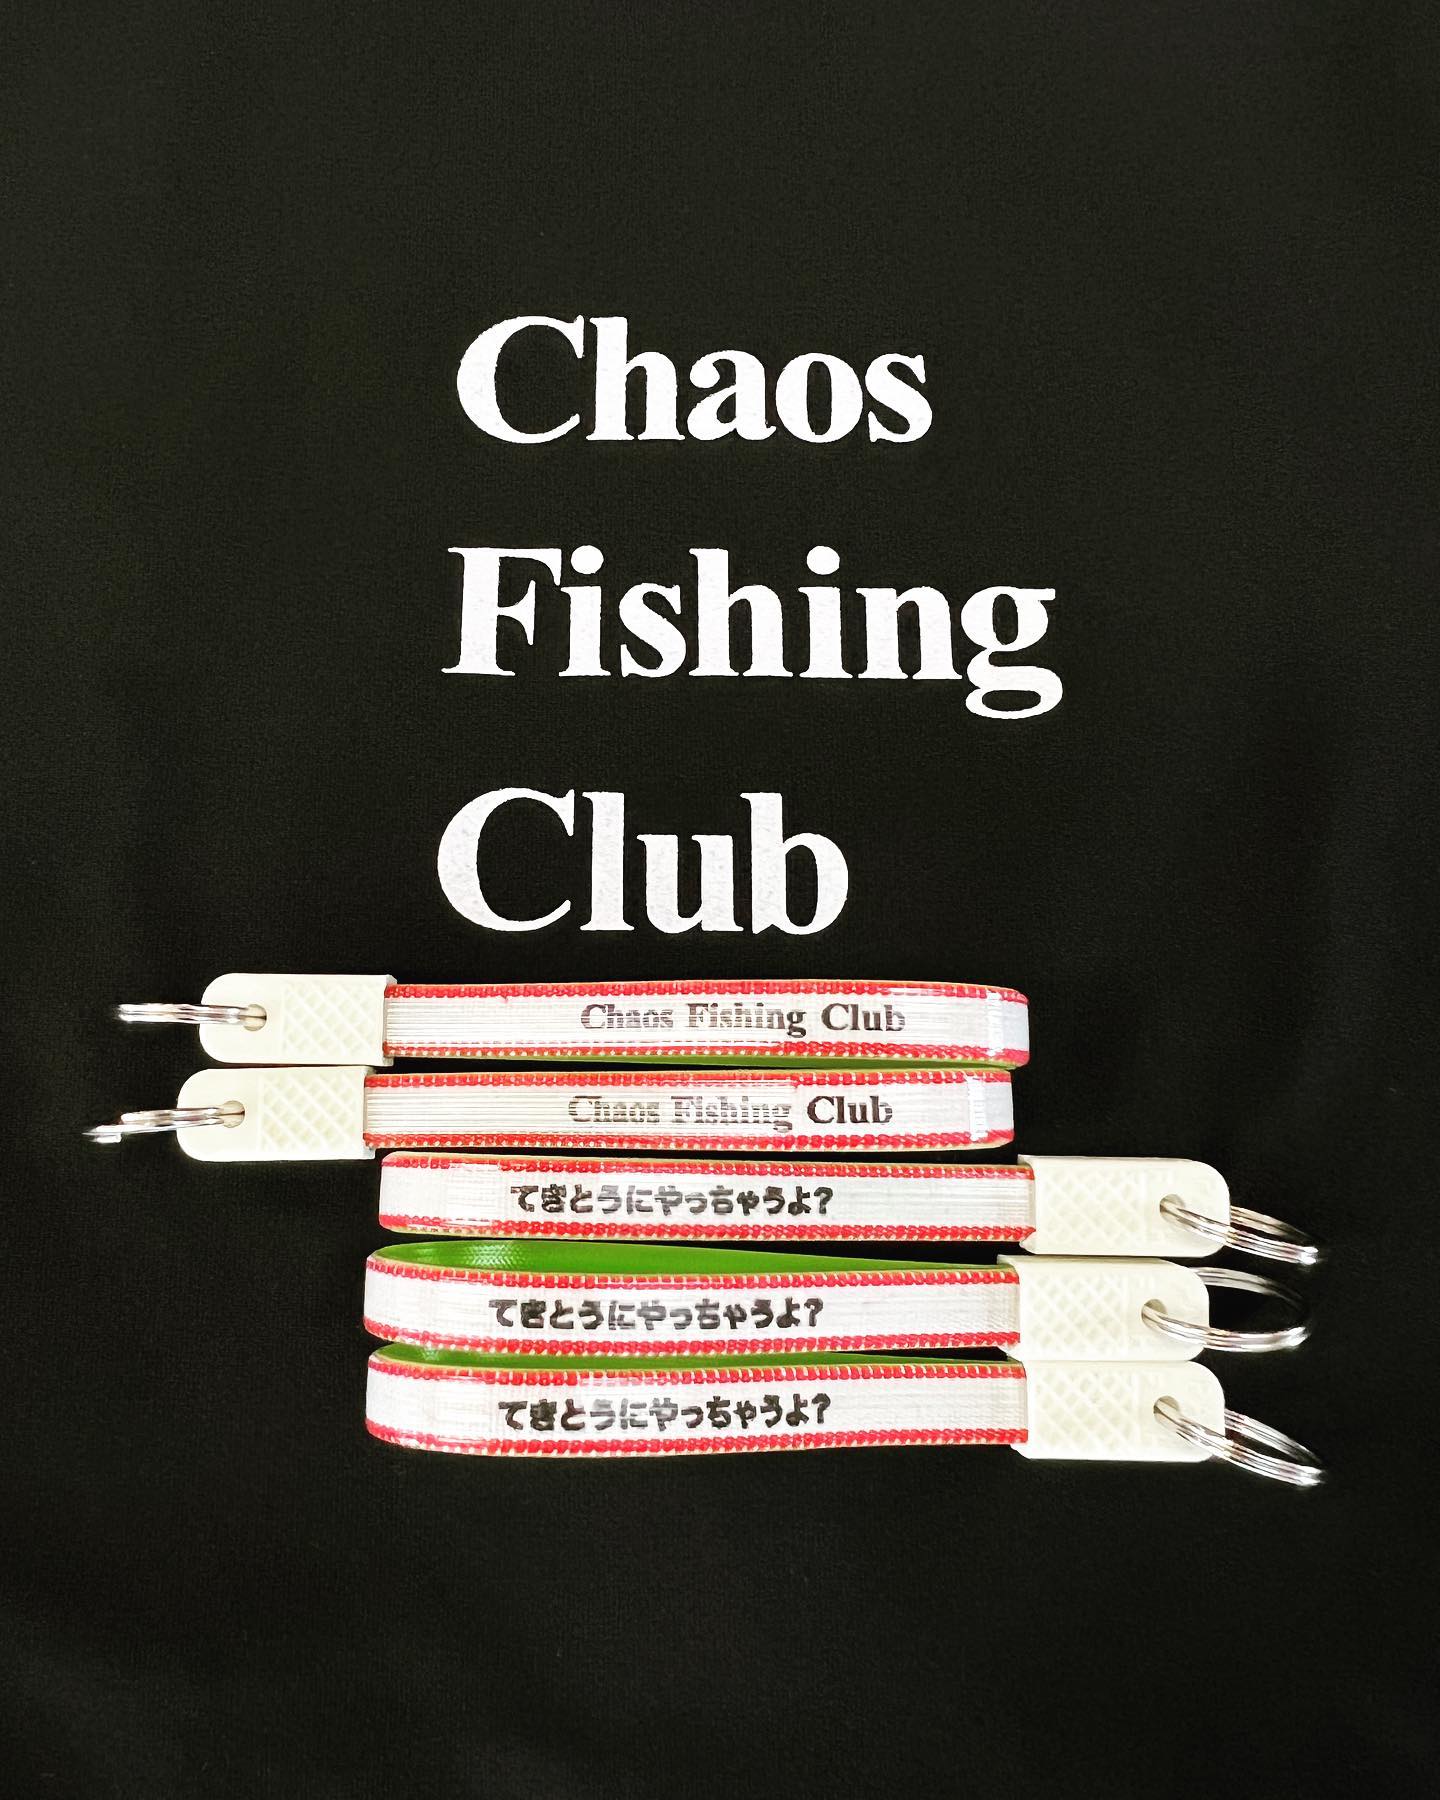 @chaos_fishing_club CFCから素敵なプレゼント浦安Store、渋谷Store、Web Storeで Chaos Fishing Clubのアイテムをご購入の方に先着でCFCのストラップをプレゼントいたします！お早めに#chaosfishingclub #てきとうにやっちゃうよ #instantskateshop